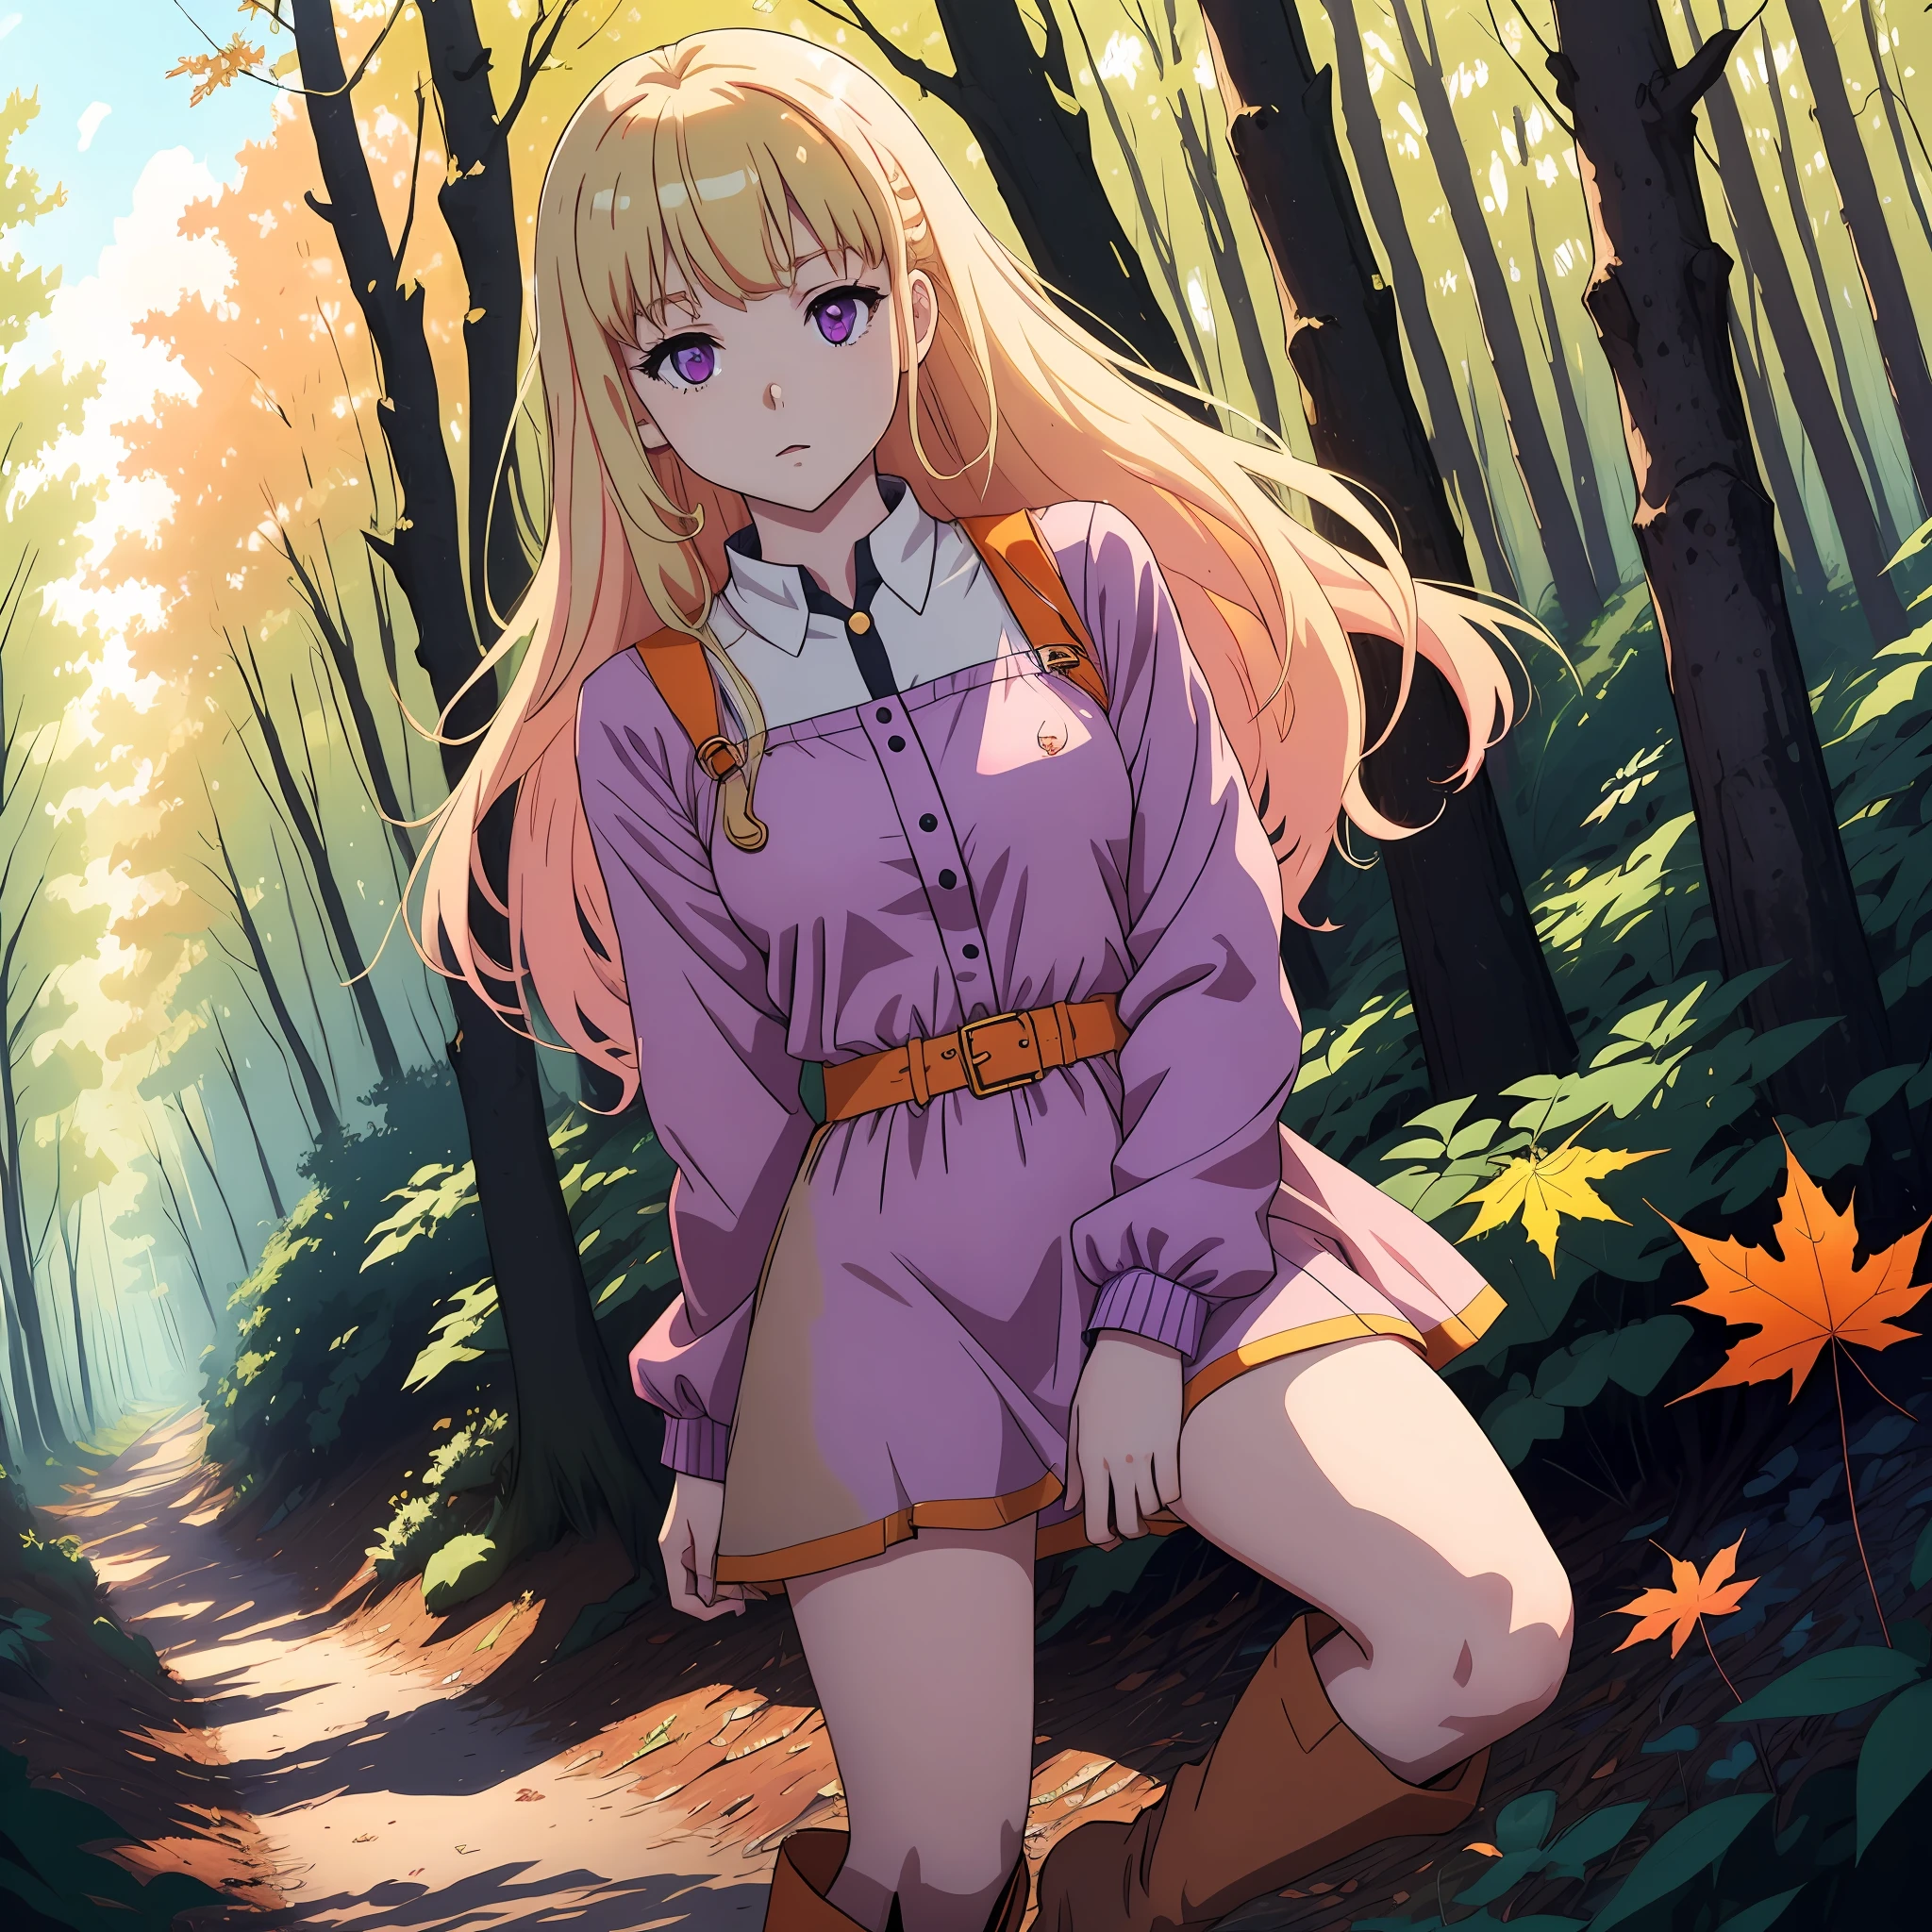 淡い青紫色の目をした明るいブロンドの髪の2Dアニメの女の子が、金ピンクのショートドレスを着て、何も描かれていない膝丈のブーツを履いて、オレンジ色のカエデの葉の下で一人で明るい青空の下の森を去る